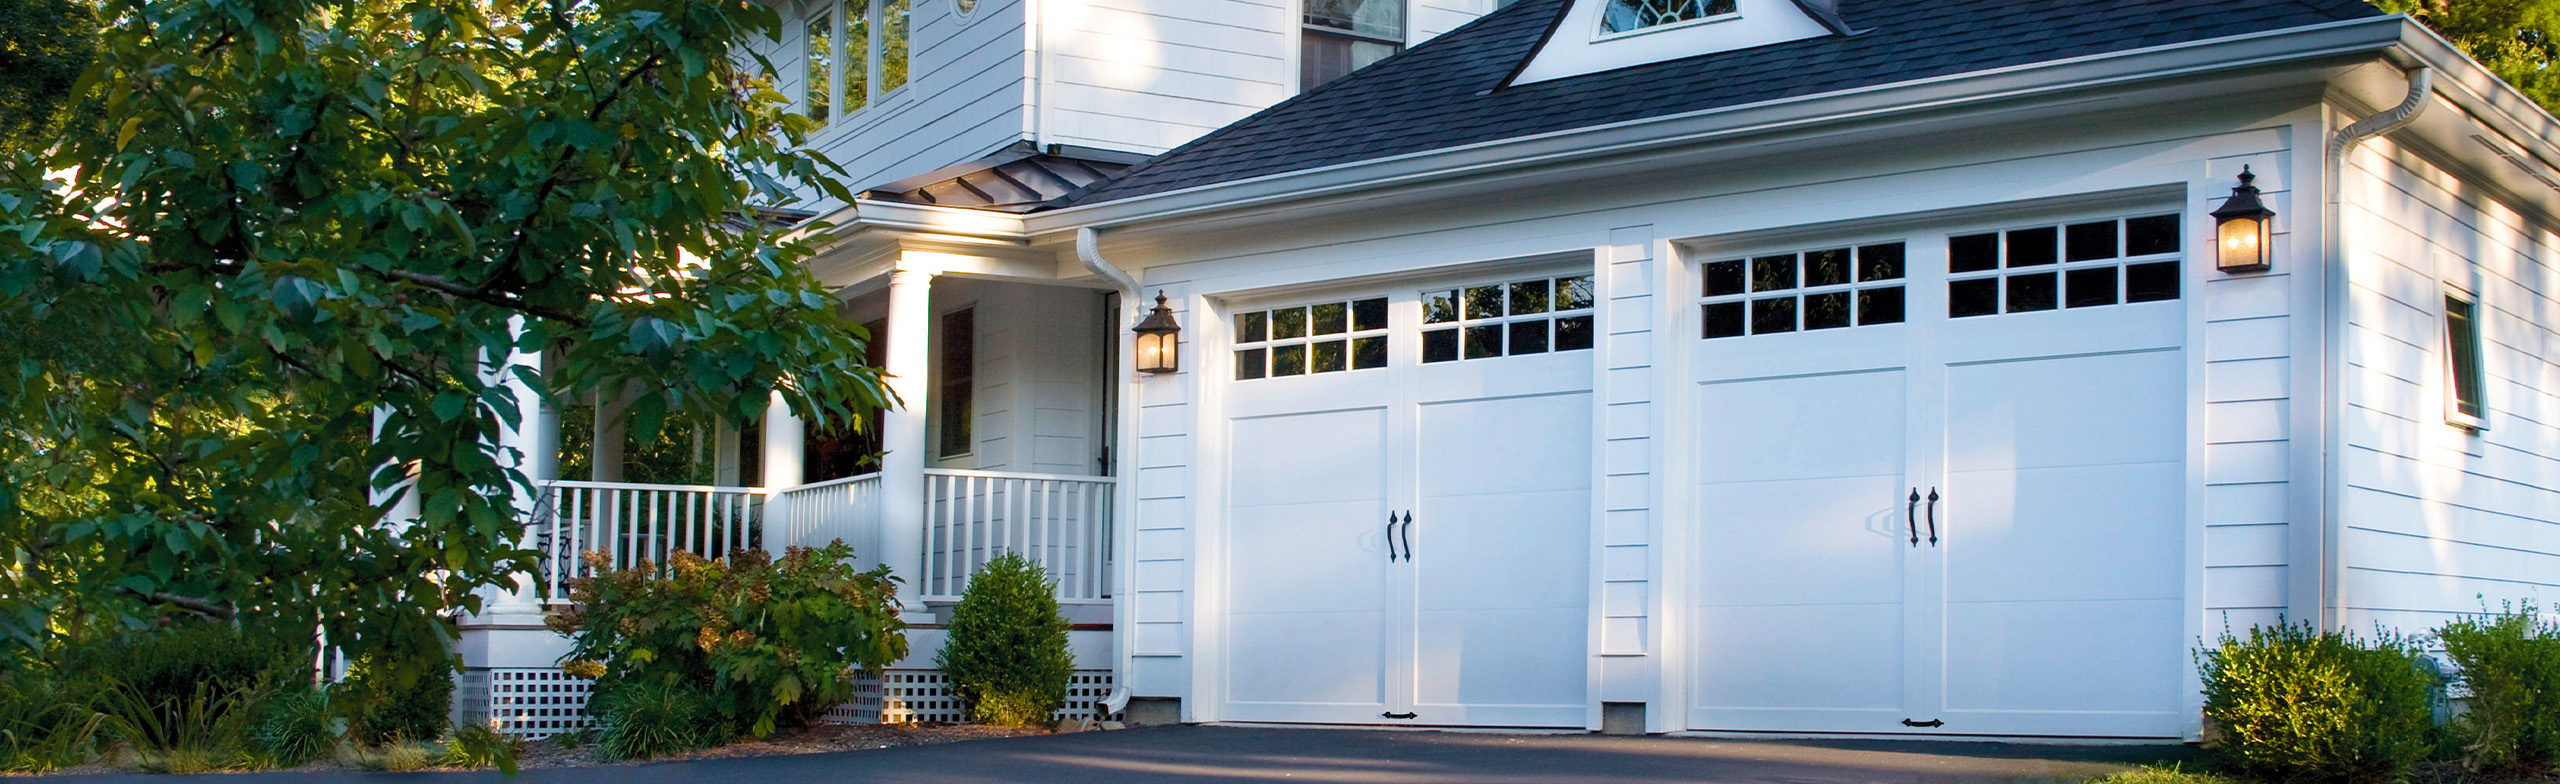 Best Garage door insulation naples fl  garage door replacement